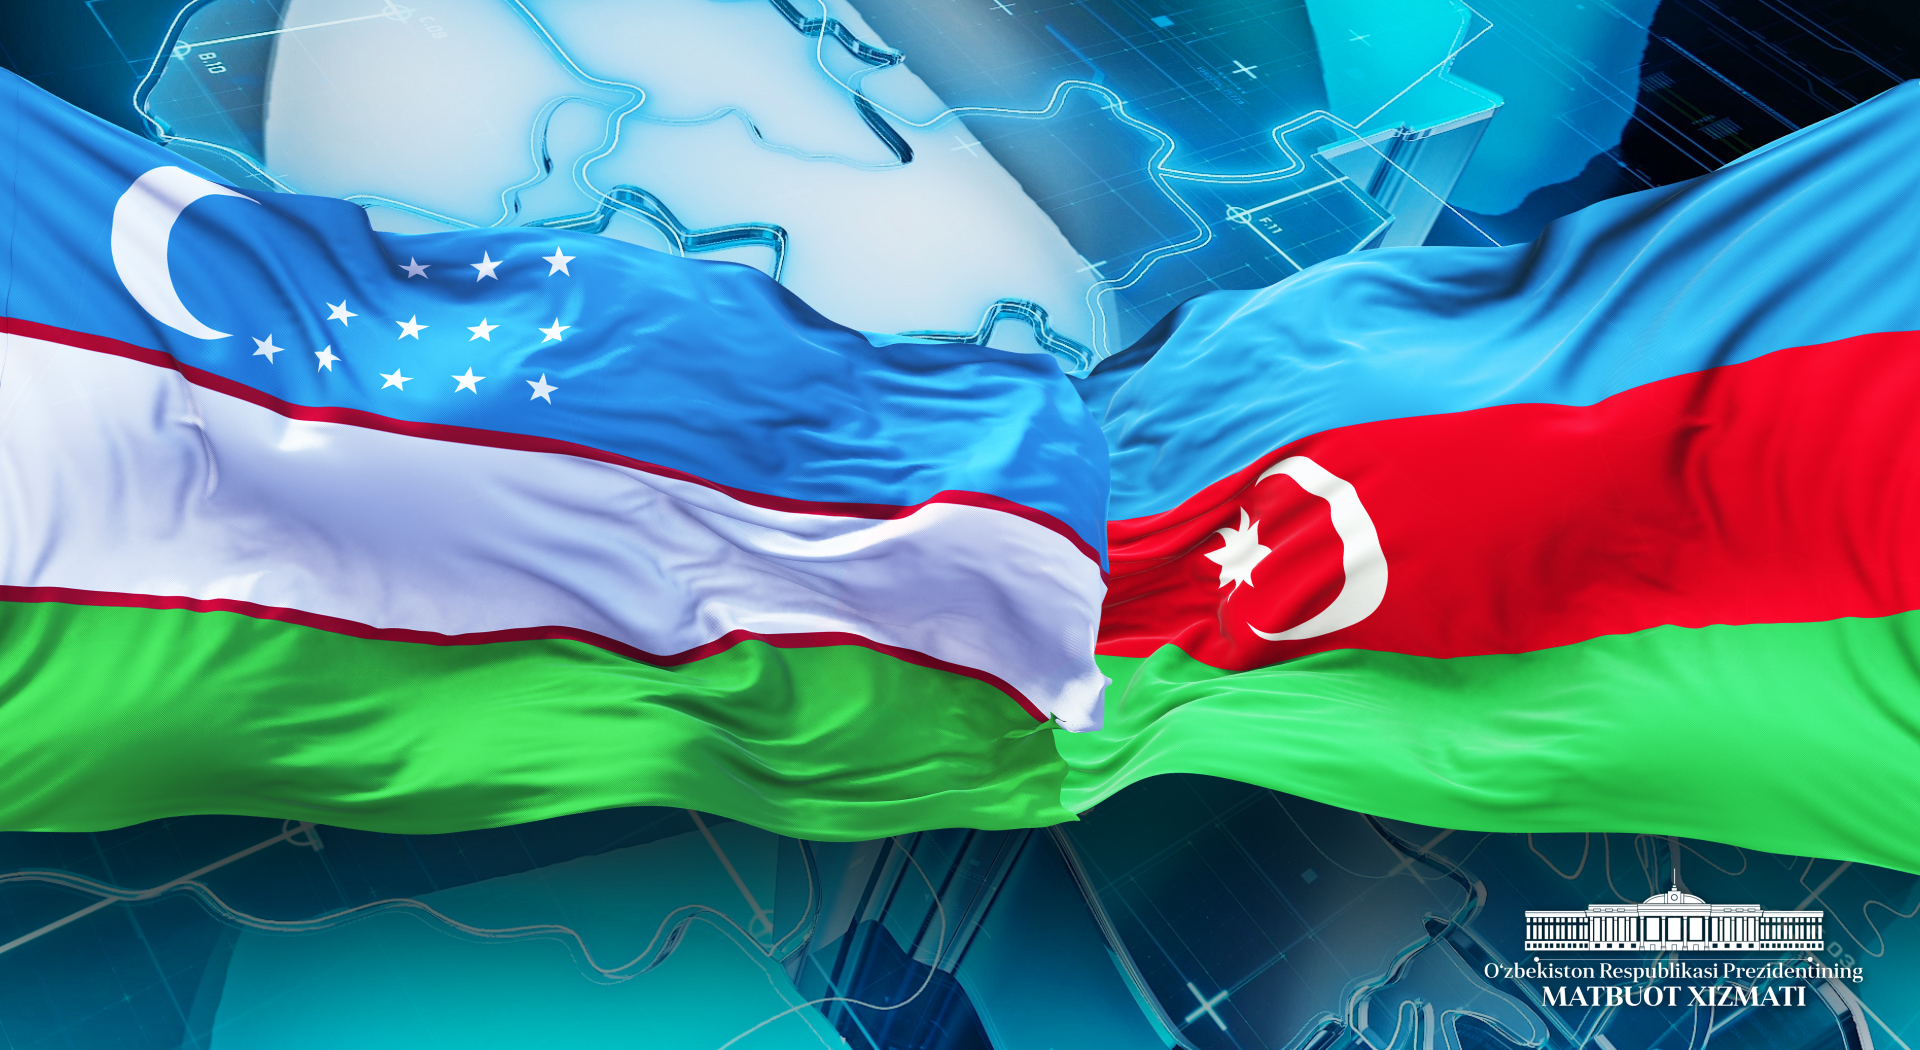 Shavkat Mirziyoyev congratulates Ilham Aliyev